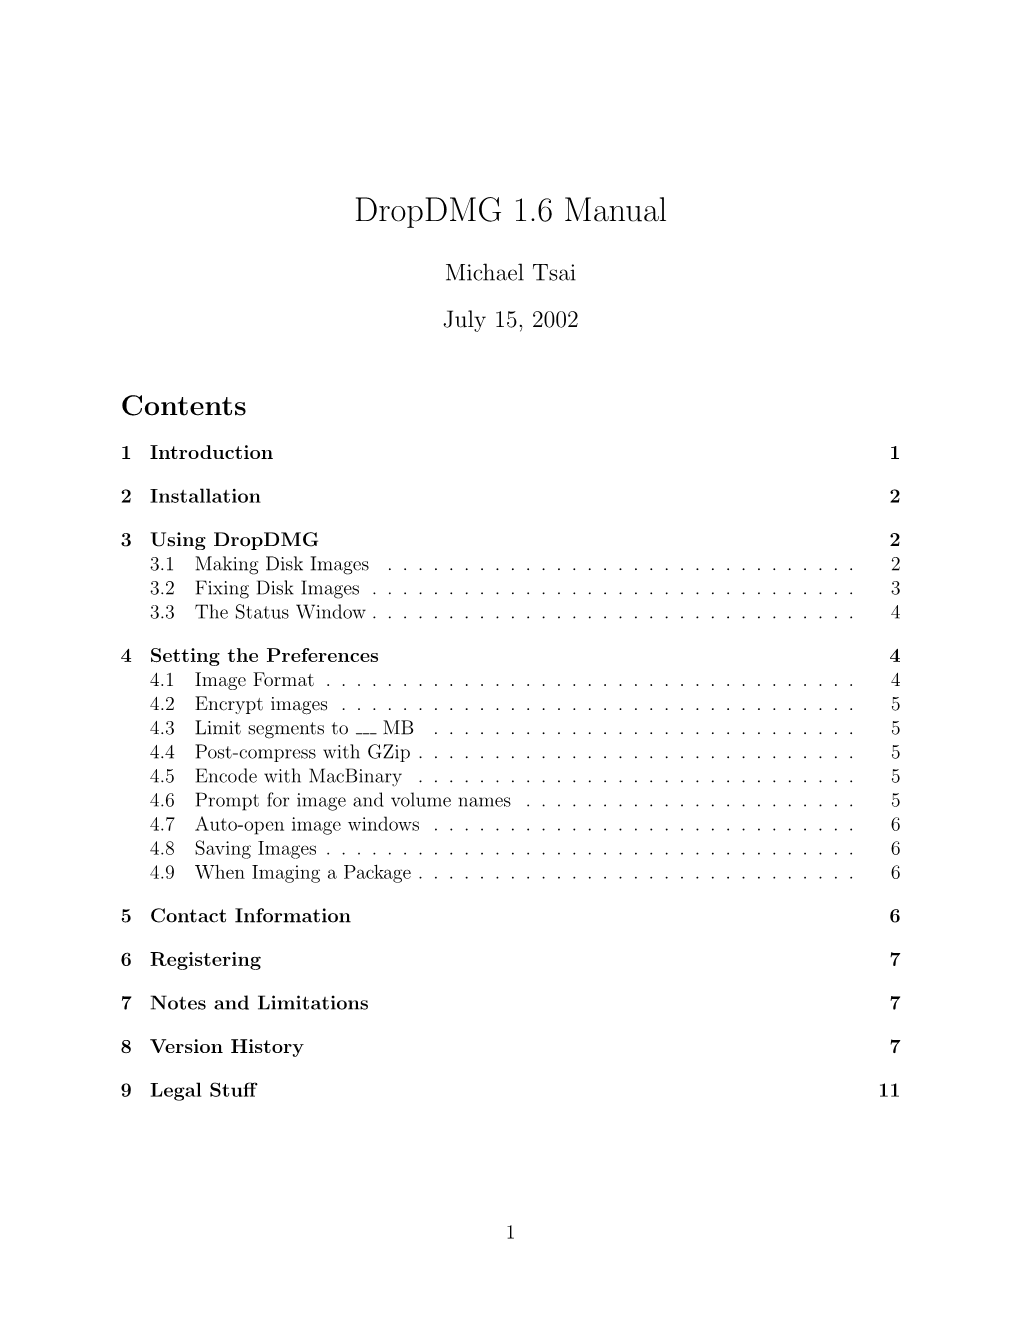 Dropdmg Manual (PDF) from the Help Menu